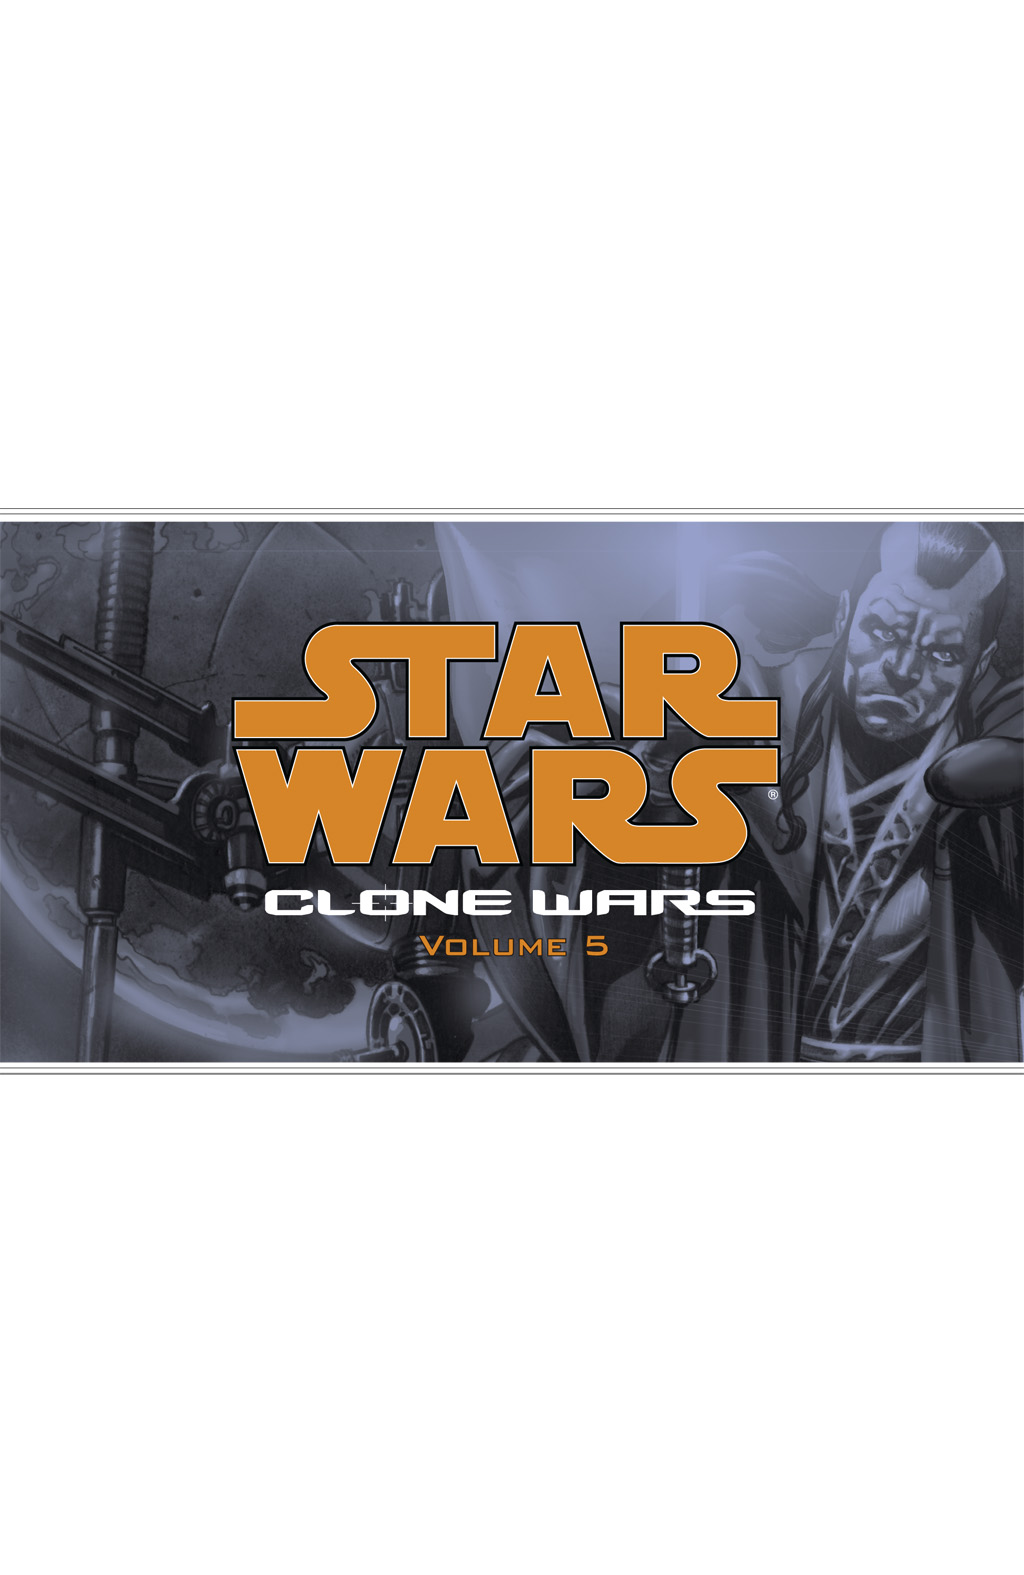 Read online Star Wars: Clone Wars comic -  Issue # TPB 5 - 2